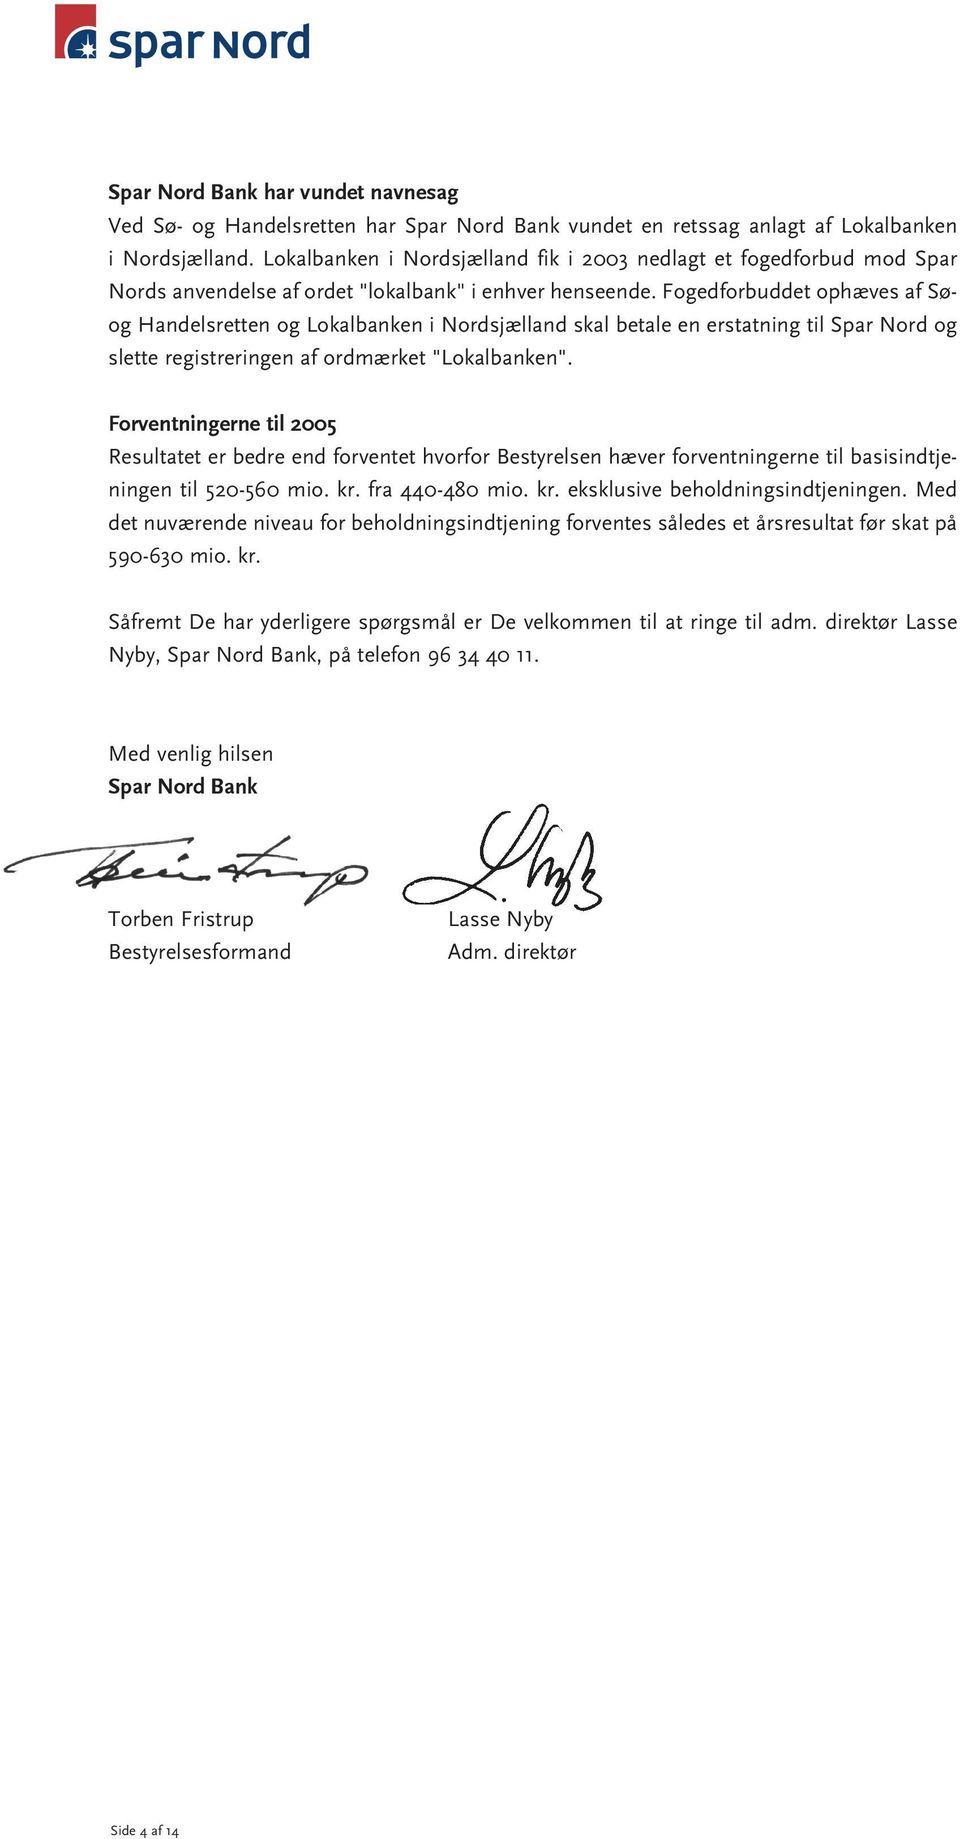 Fogedforbuddet ophæves af Søog Handelsretten og Lokalbanken i Nordsjælland skal betale en erstatning til Spar Nord og slette registreringen af ordmærket "Lokalbanken".